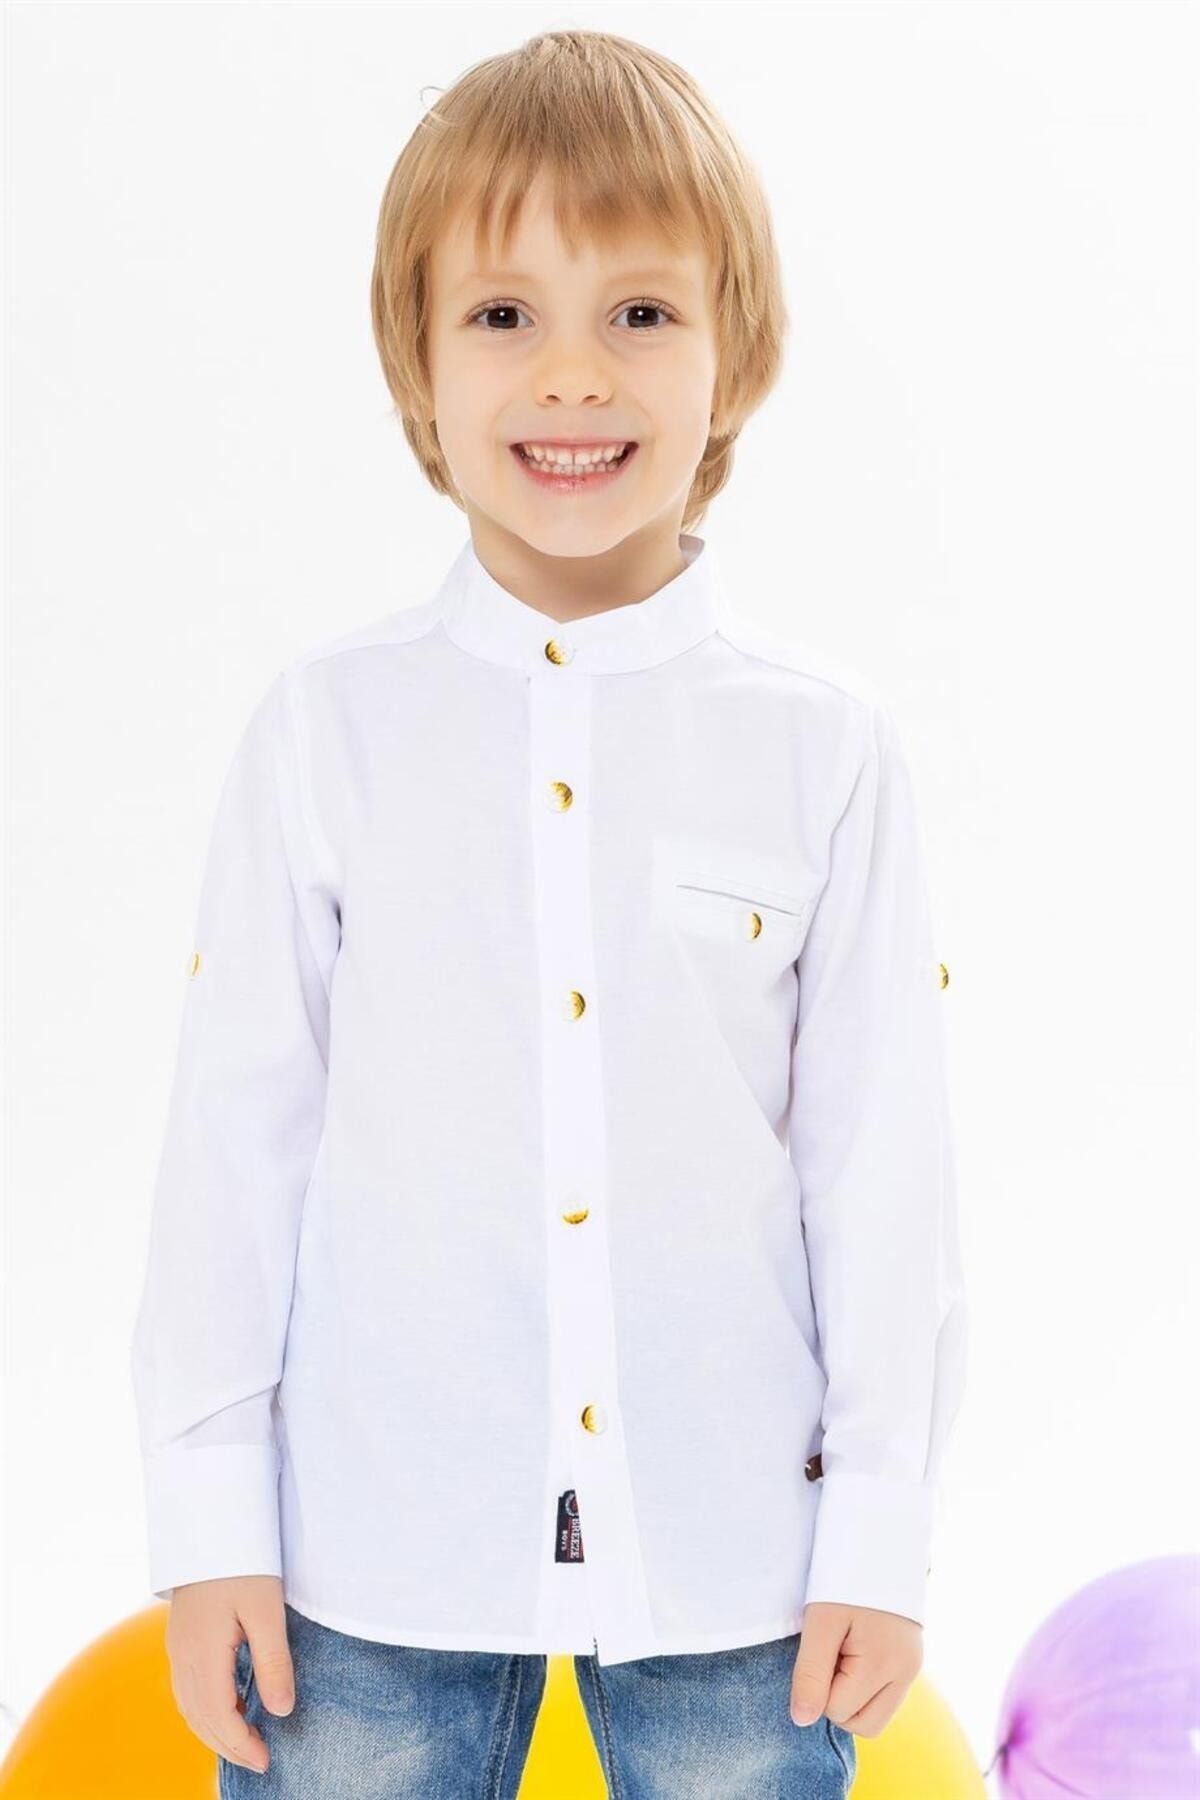 Breeze Erkek Çocuk Gömlek Armalı Düğmeli Beyaz Casual (8-12 YAŞ)